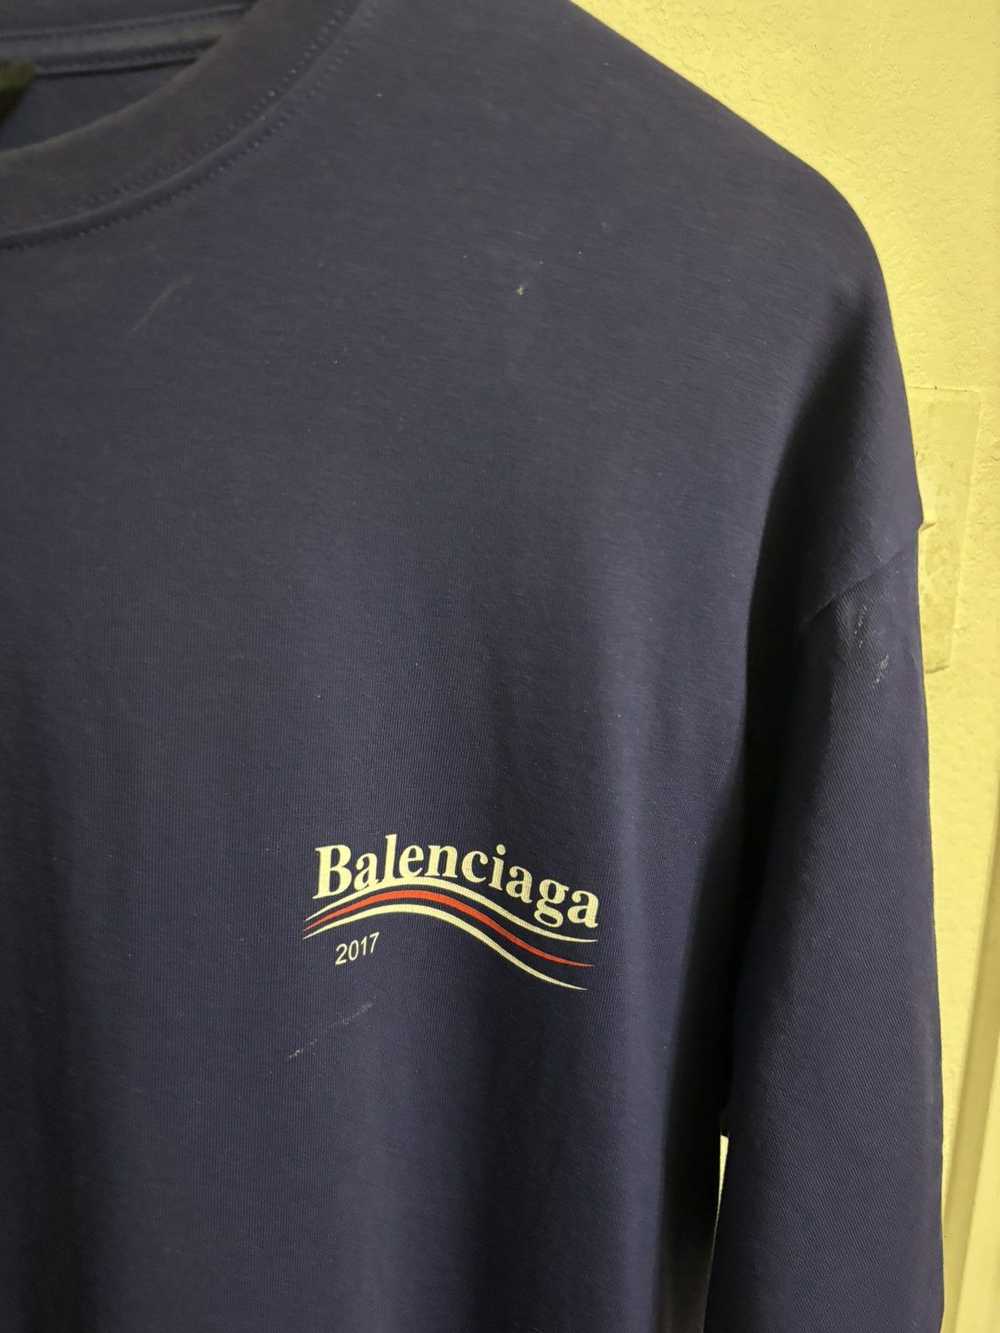 Balenciaga Balenciaga T-shirt 2017 - image 3